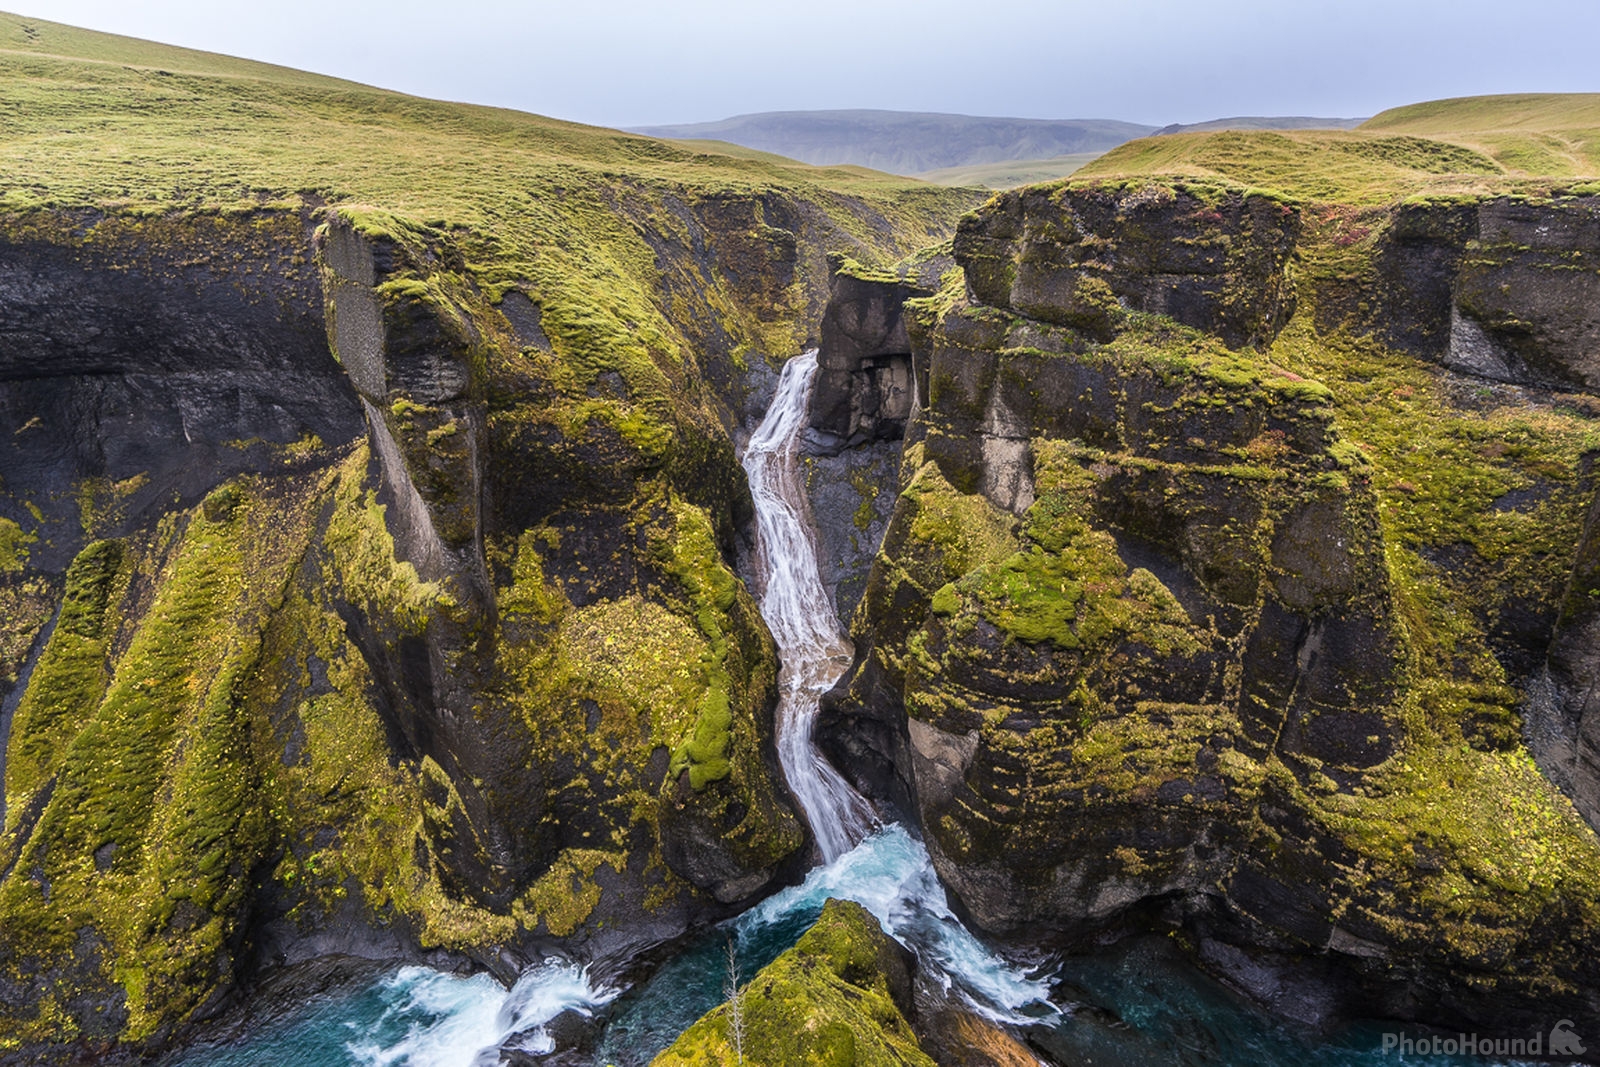 Image of Fjaðrárgljúfur Canyon by James Billings.